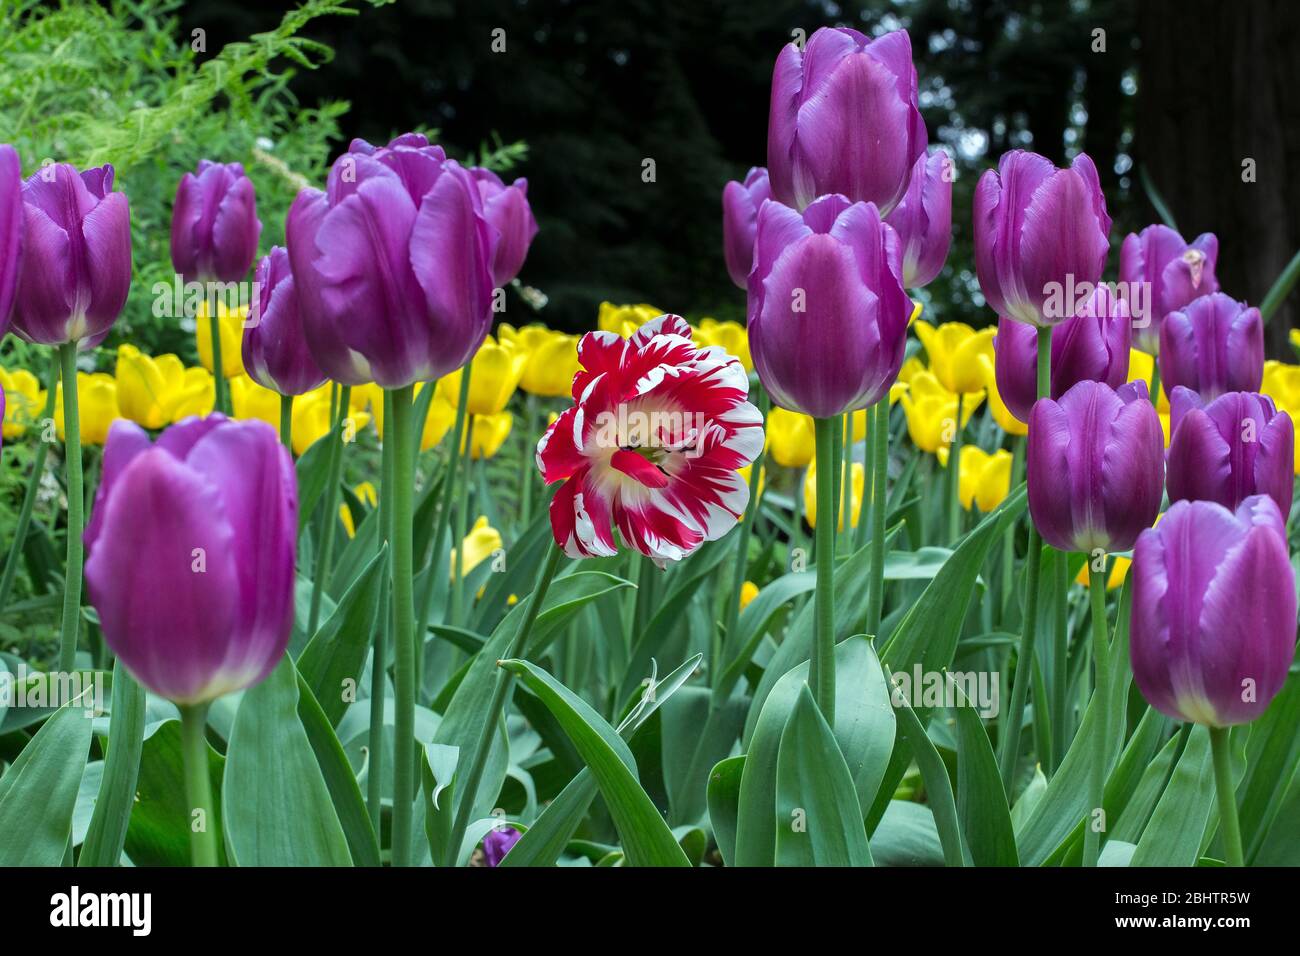 Helle bunte Tiefblick Foto einer Gruppe von lila Tulpen und einer roten und weißen Tulpe in der Mitte. Konzept des Aufstehens aus der Masse. Stockfoto